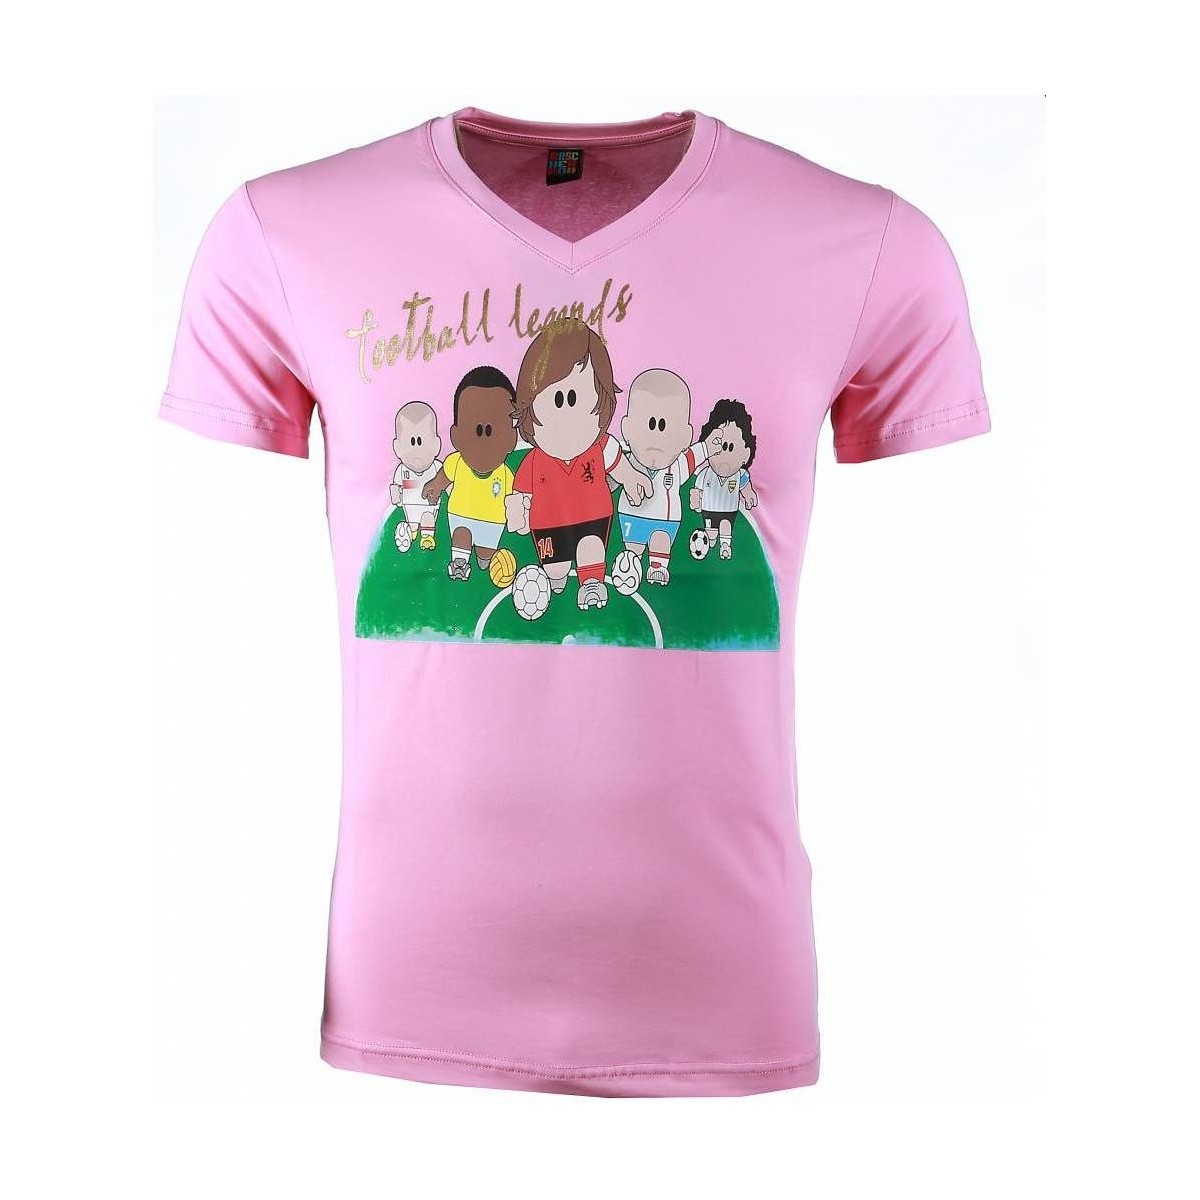 Textiel Heren T-shirts korte mouwen Local Fanatic Football Legends Print Roze